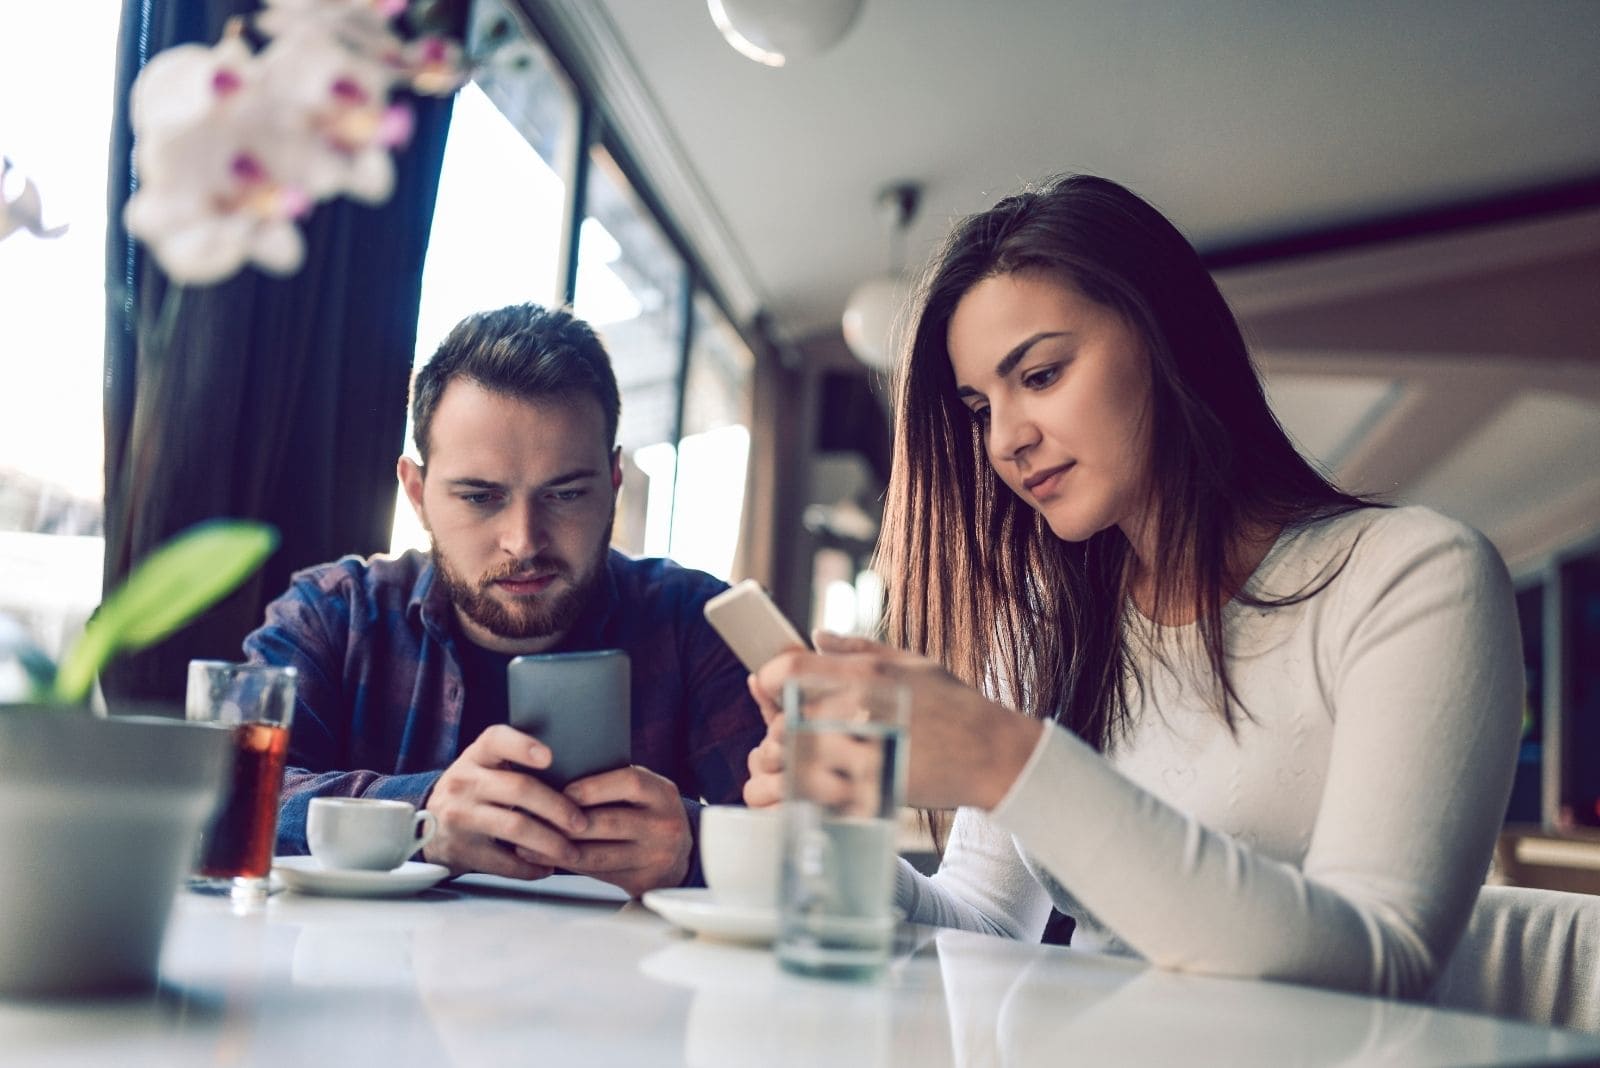 coppia che trascorre il tempo insieme in un silenzio imbarazzante all'interno del caffè, entrambi occupati con i loro gadget